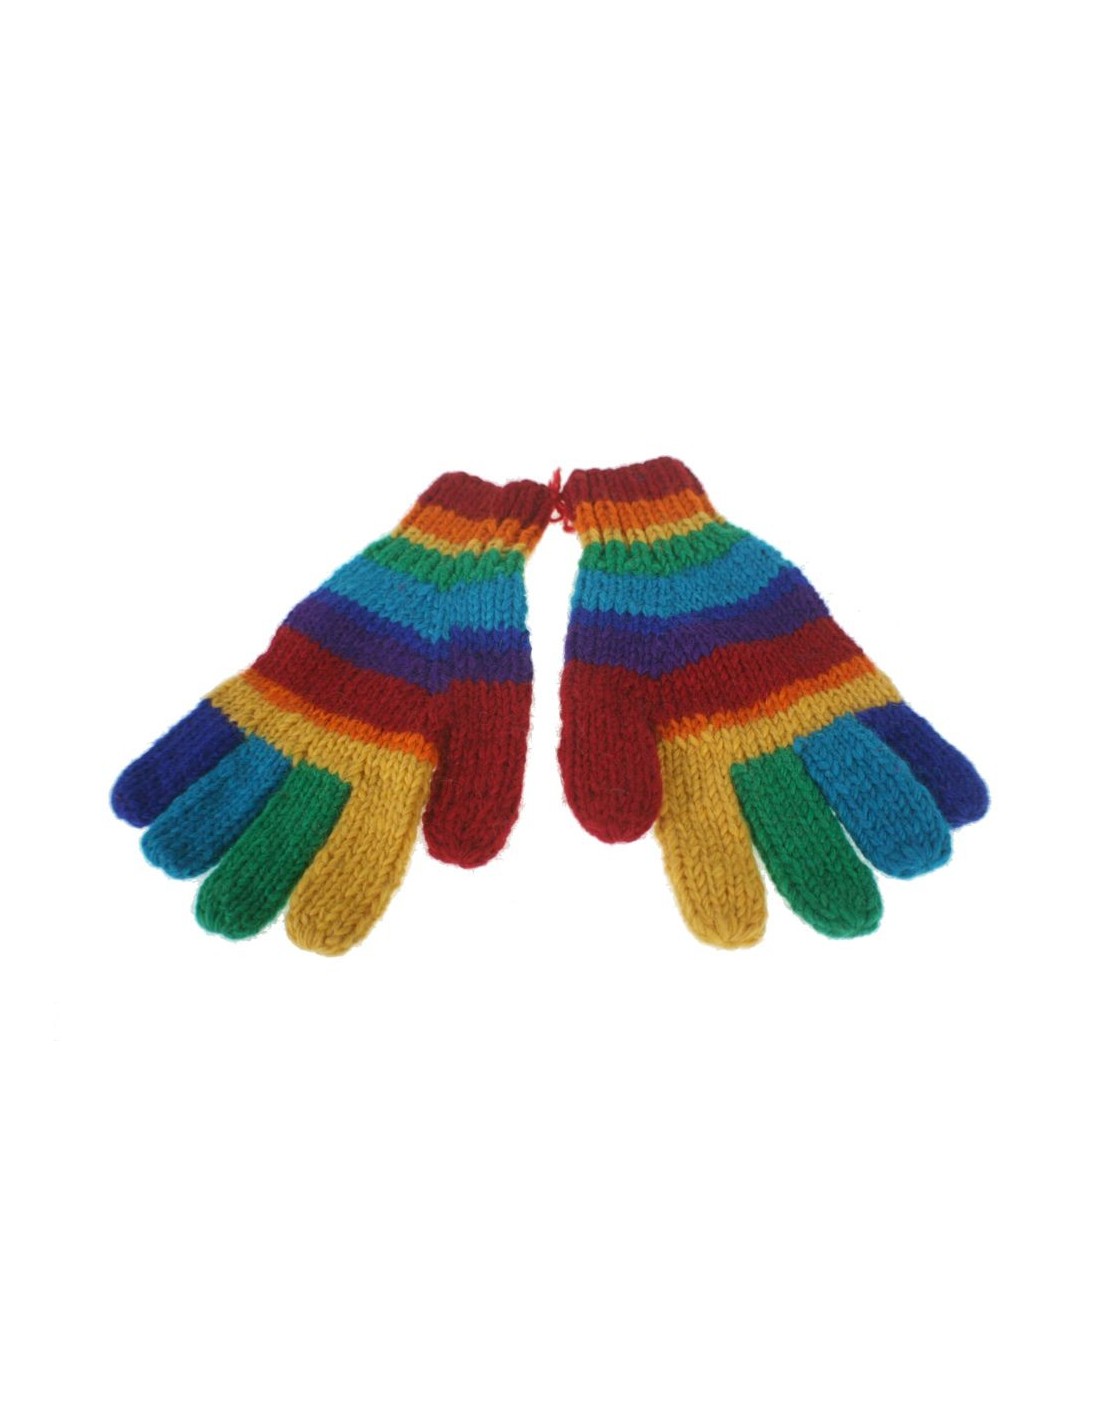 Guantes de lana color arcoíris calientes suaves para invierno guantes unisex artesanal adulto regalo original de estilo hippie